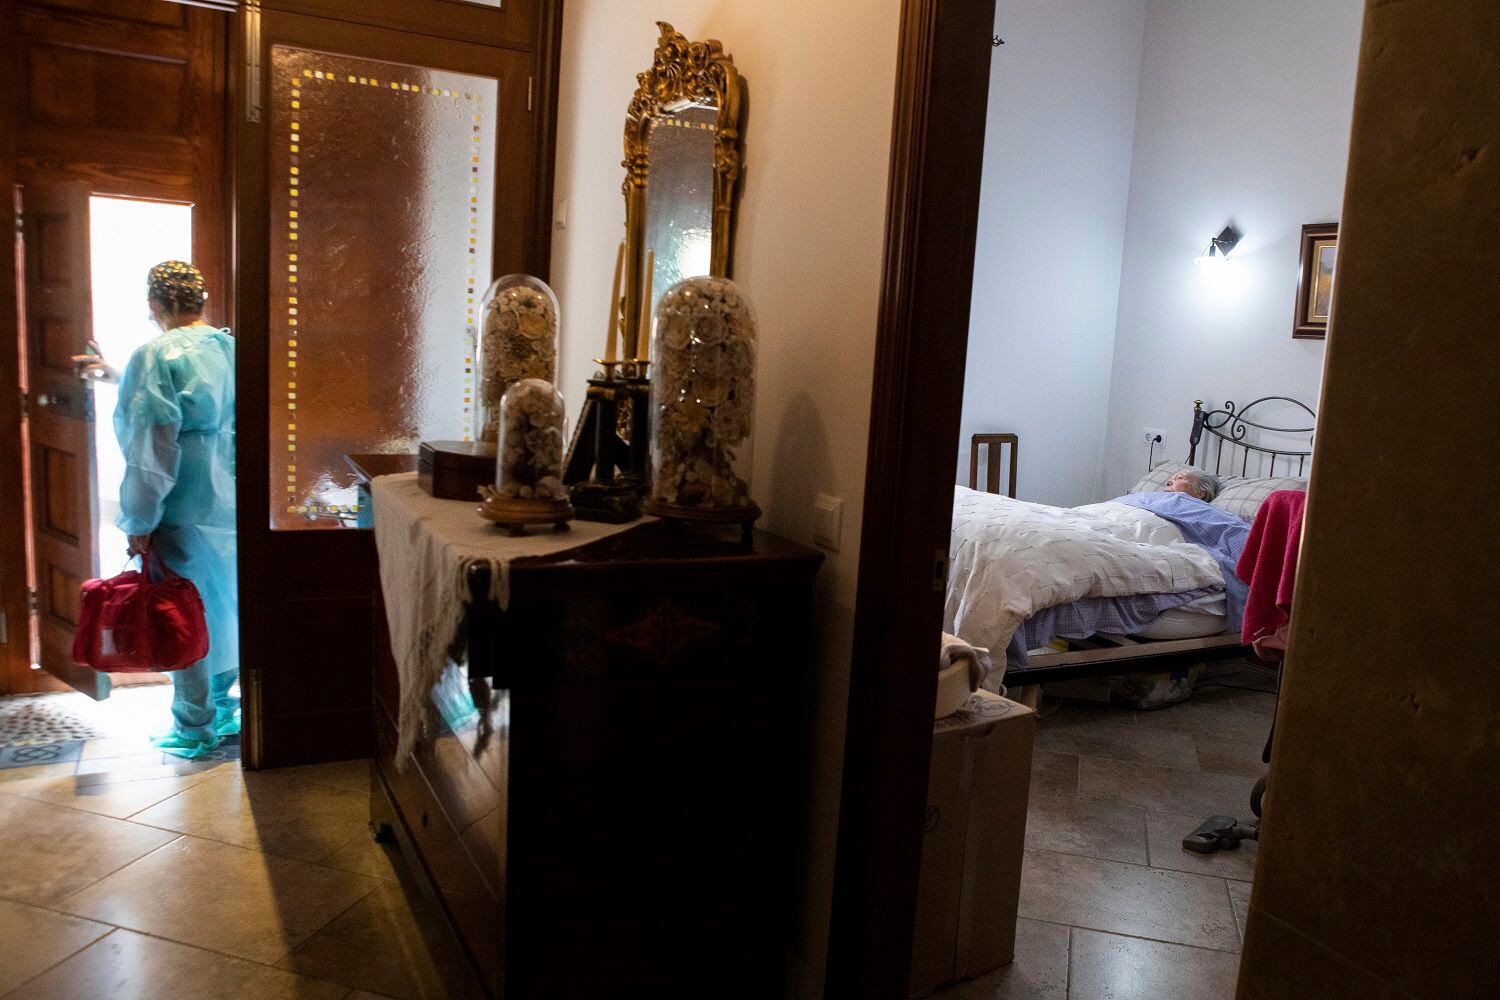 La enfermera Pilar Rodríguez se marcha de la casa de Margarita Serra Crespi, de 93 años, tras ponerle la vacuna contra el coronavirus, en la localidad de Sa Pobla, en la isla española de Mallorca, el 30 de abril de 2021. (AP Foto/Francisco Ubilla)